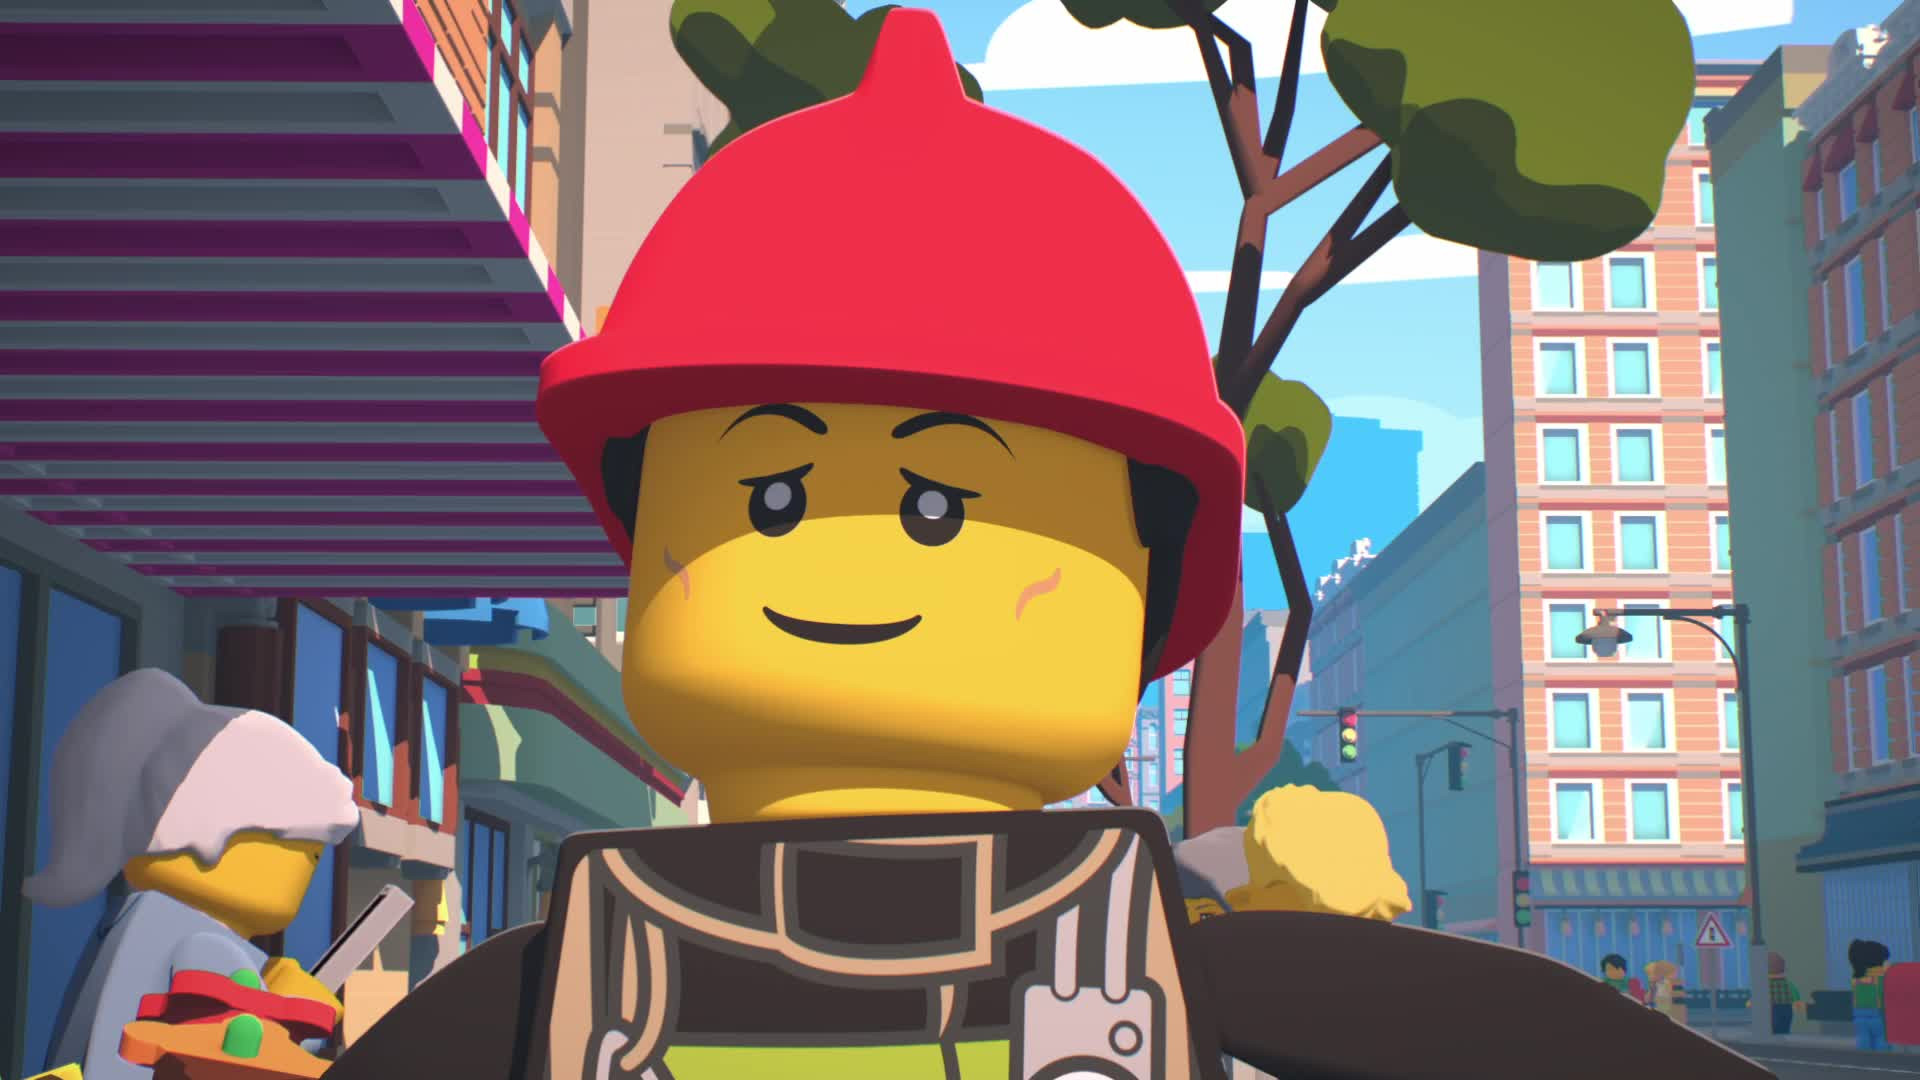 Forfalske fugl Monograph LEGO City Приключения (2 сезон 1 серия, мультфильм) — смотреть онлайн в  хорошем качестве Full HD (1080) или HD (720)